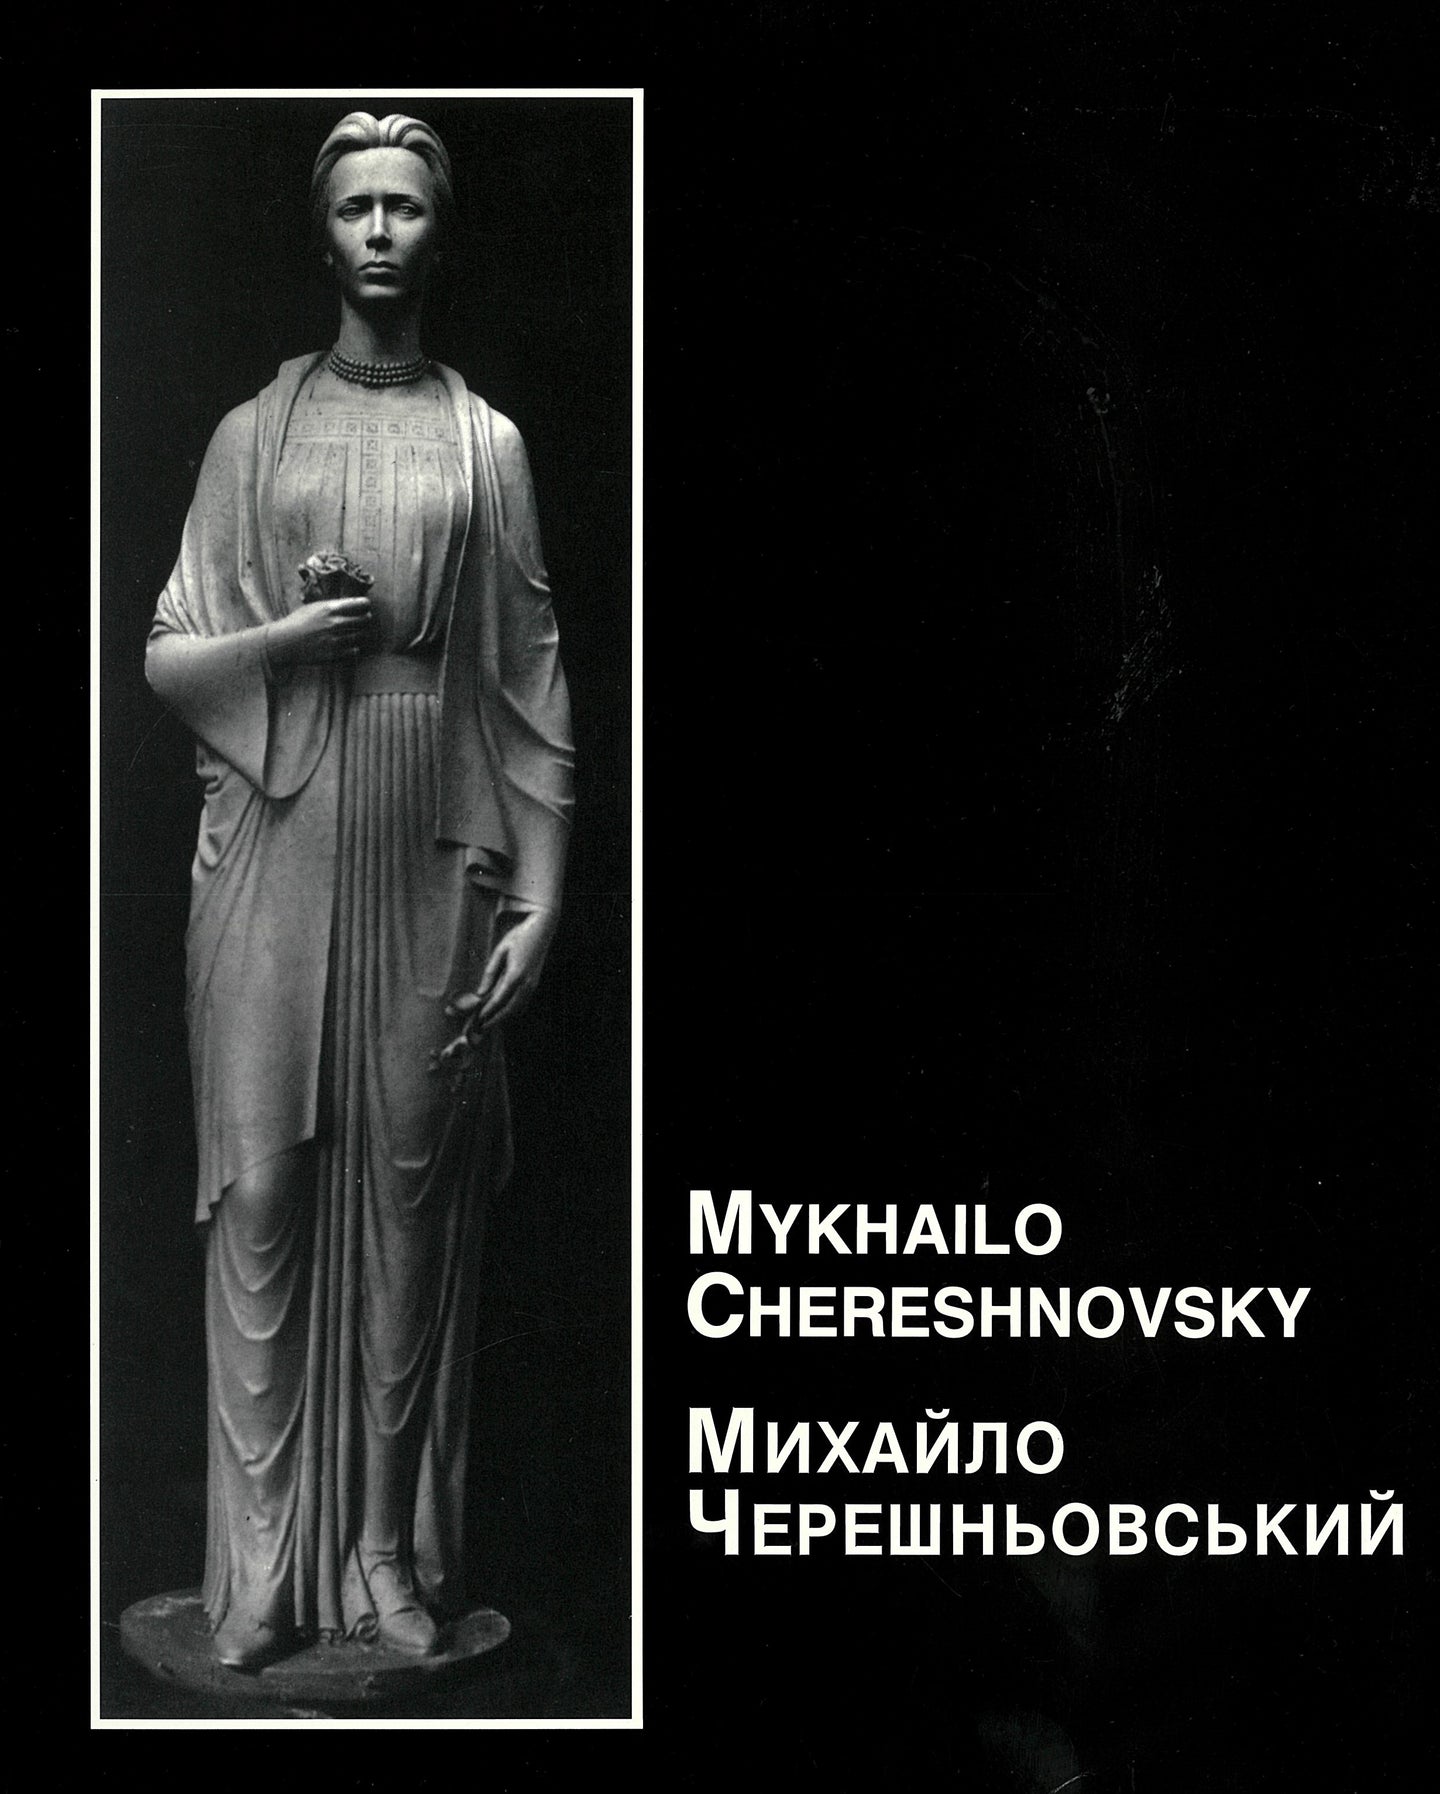 Mykhailo Chereshnovsky